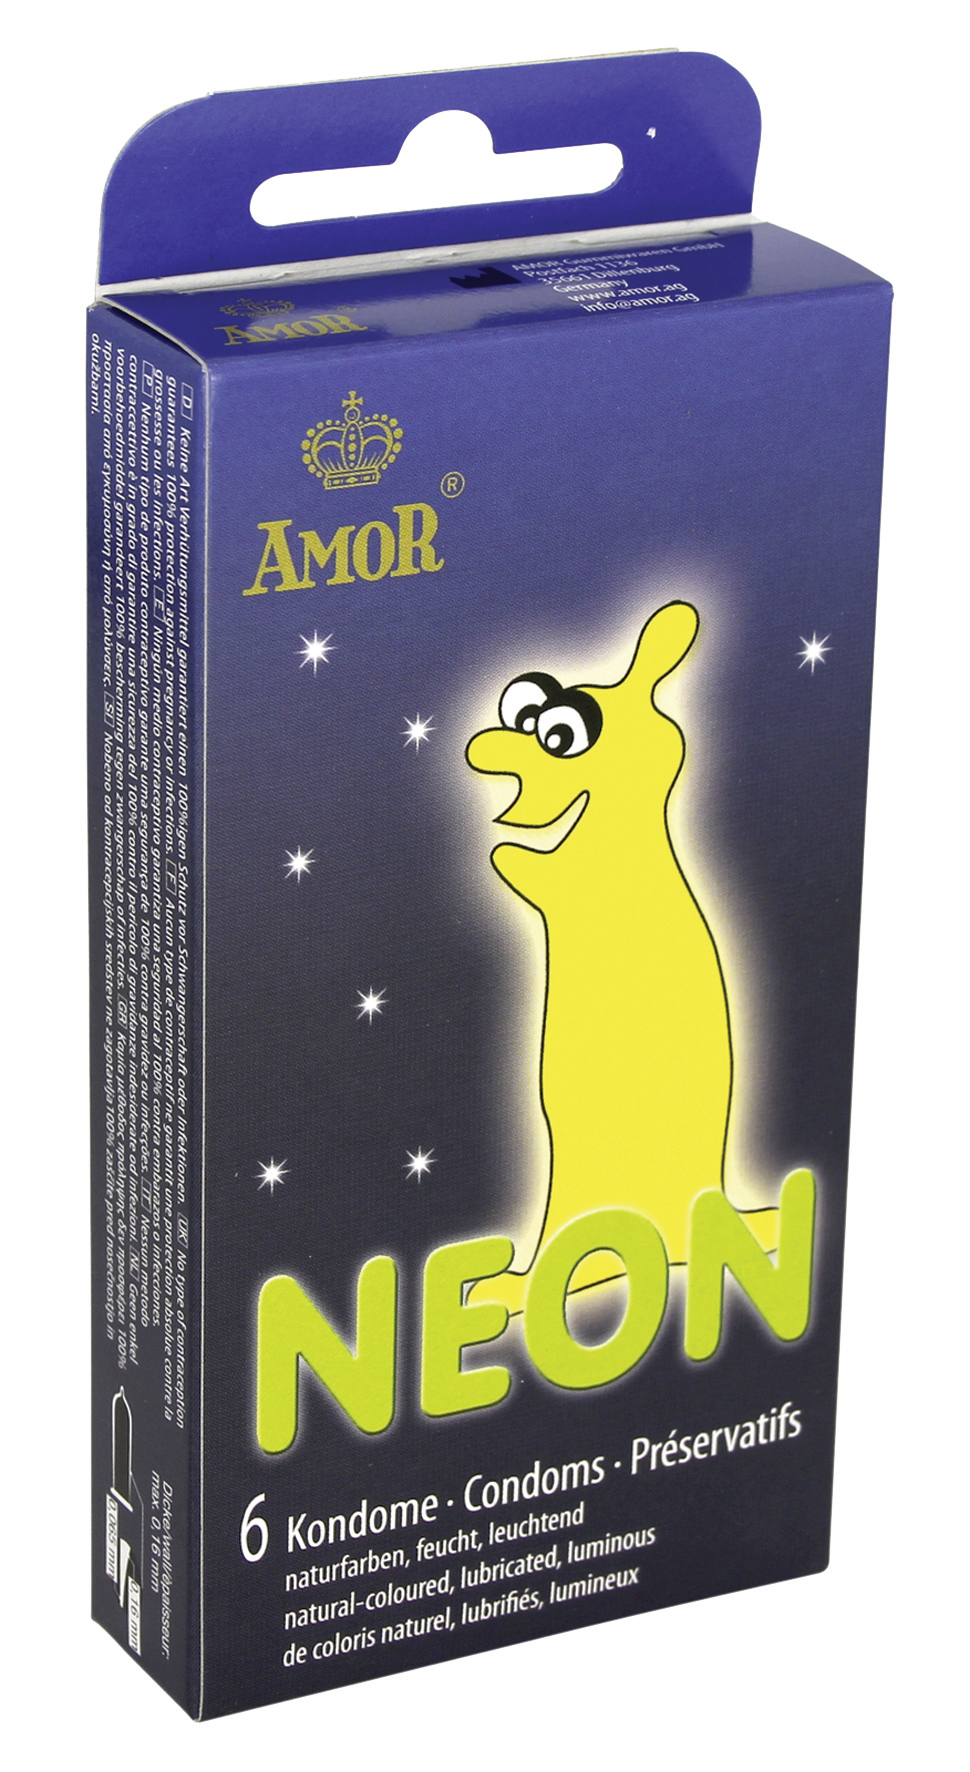 AMOR Neon Kondome 6er